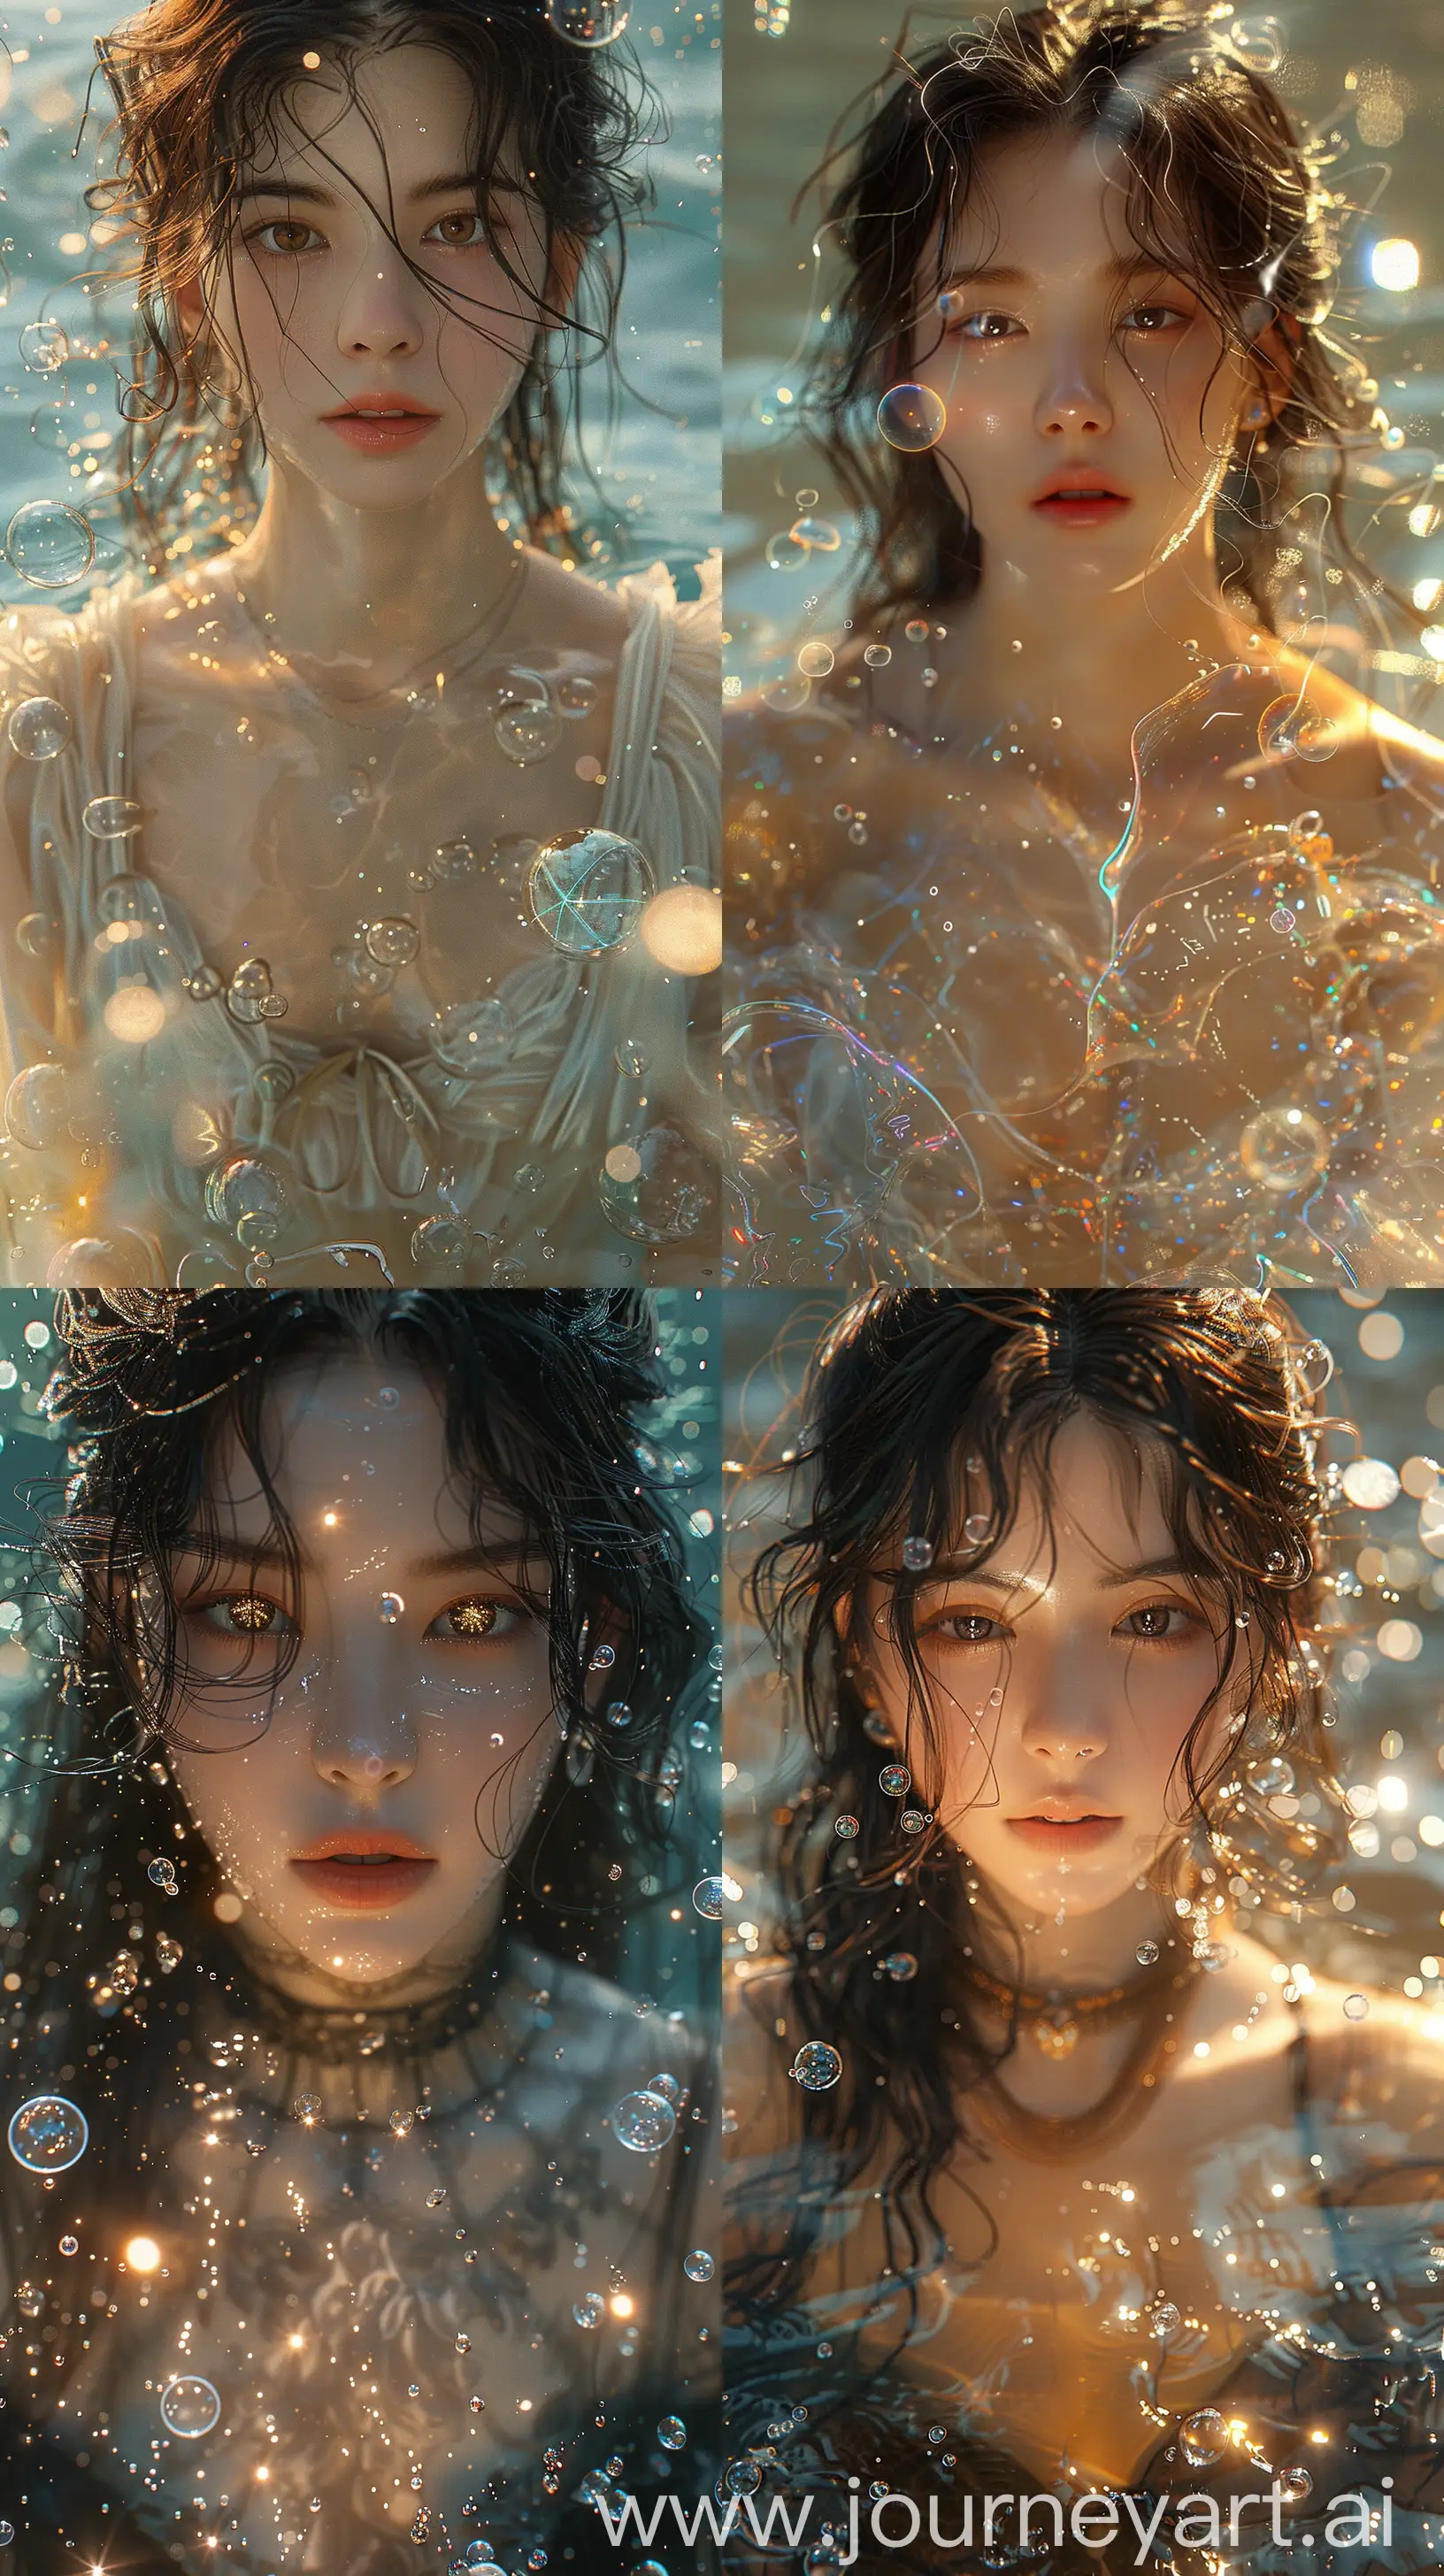 Fantasy-Portrait-of-Blackpinks-Jenny-in-Glowing-Water